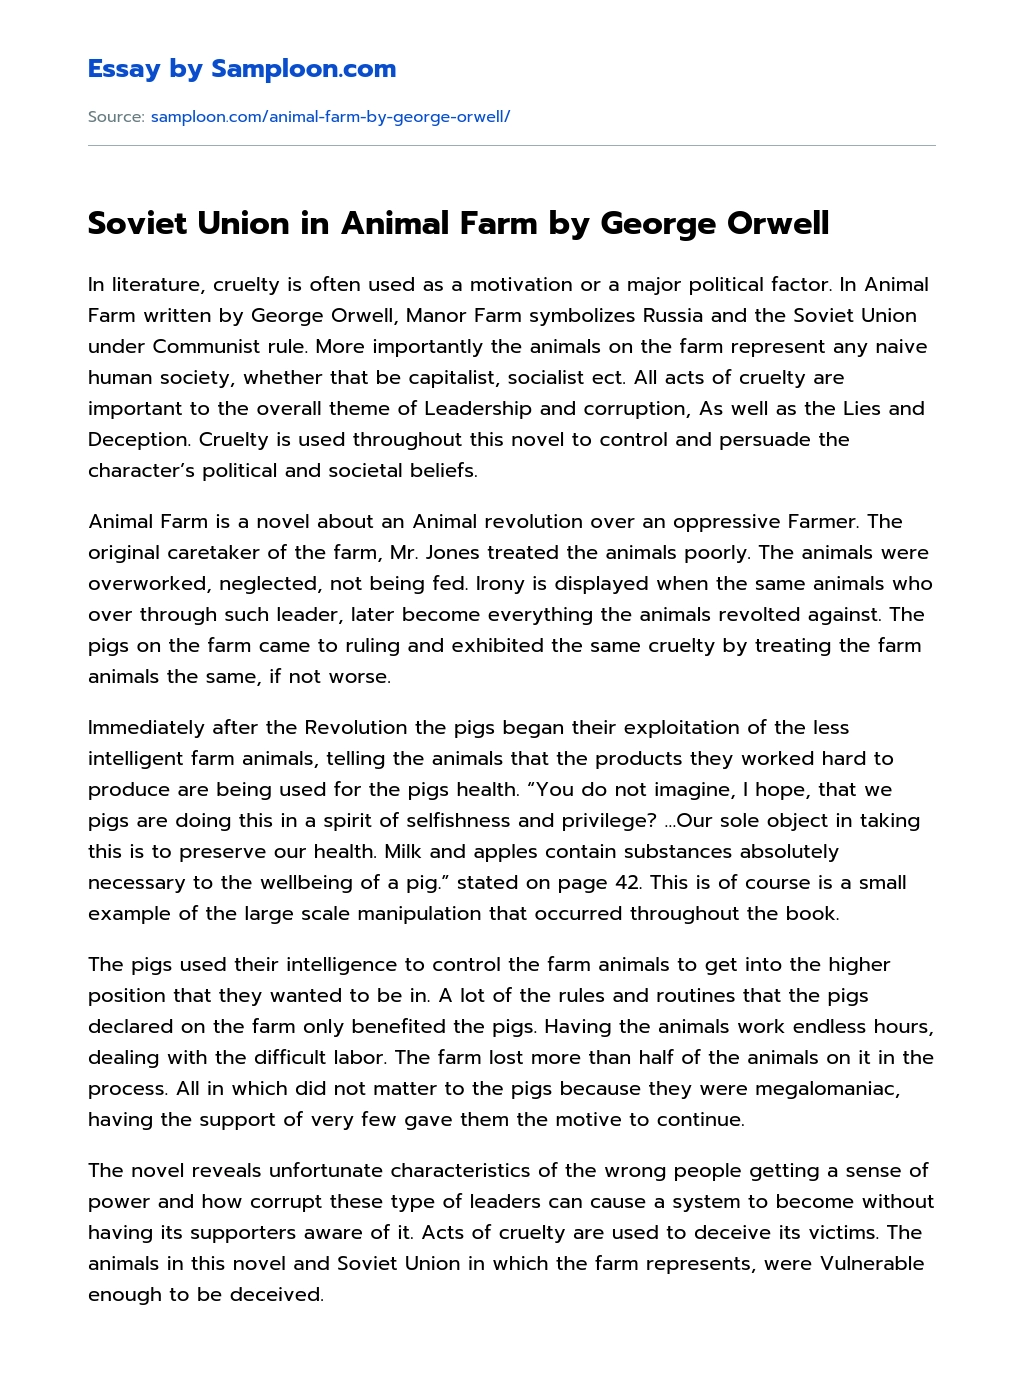 Soviet Union in Animal Farm by George Orwell essay